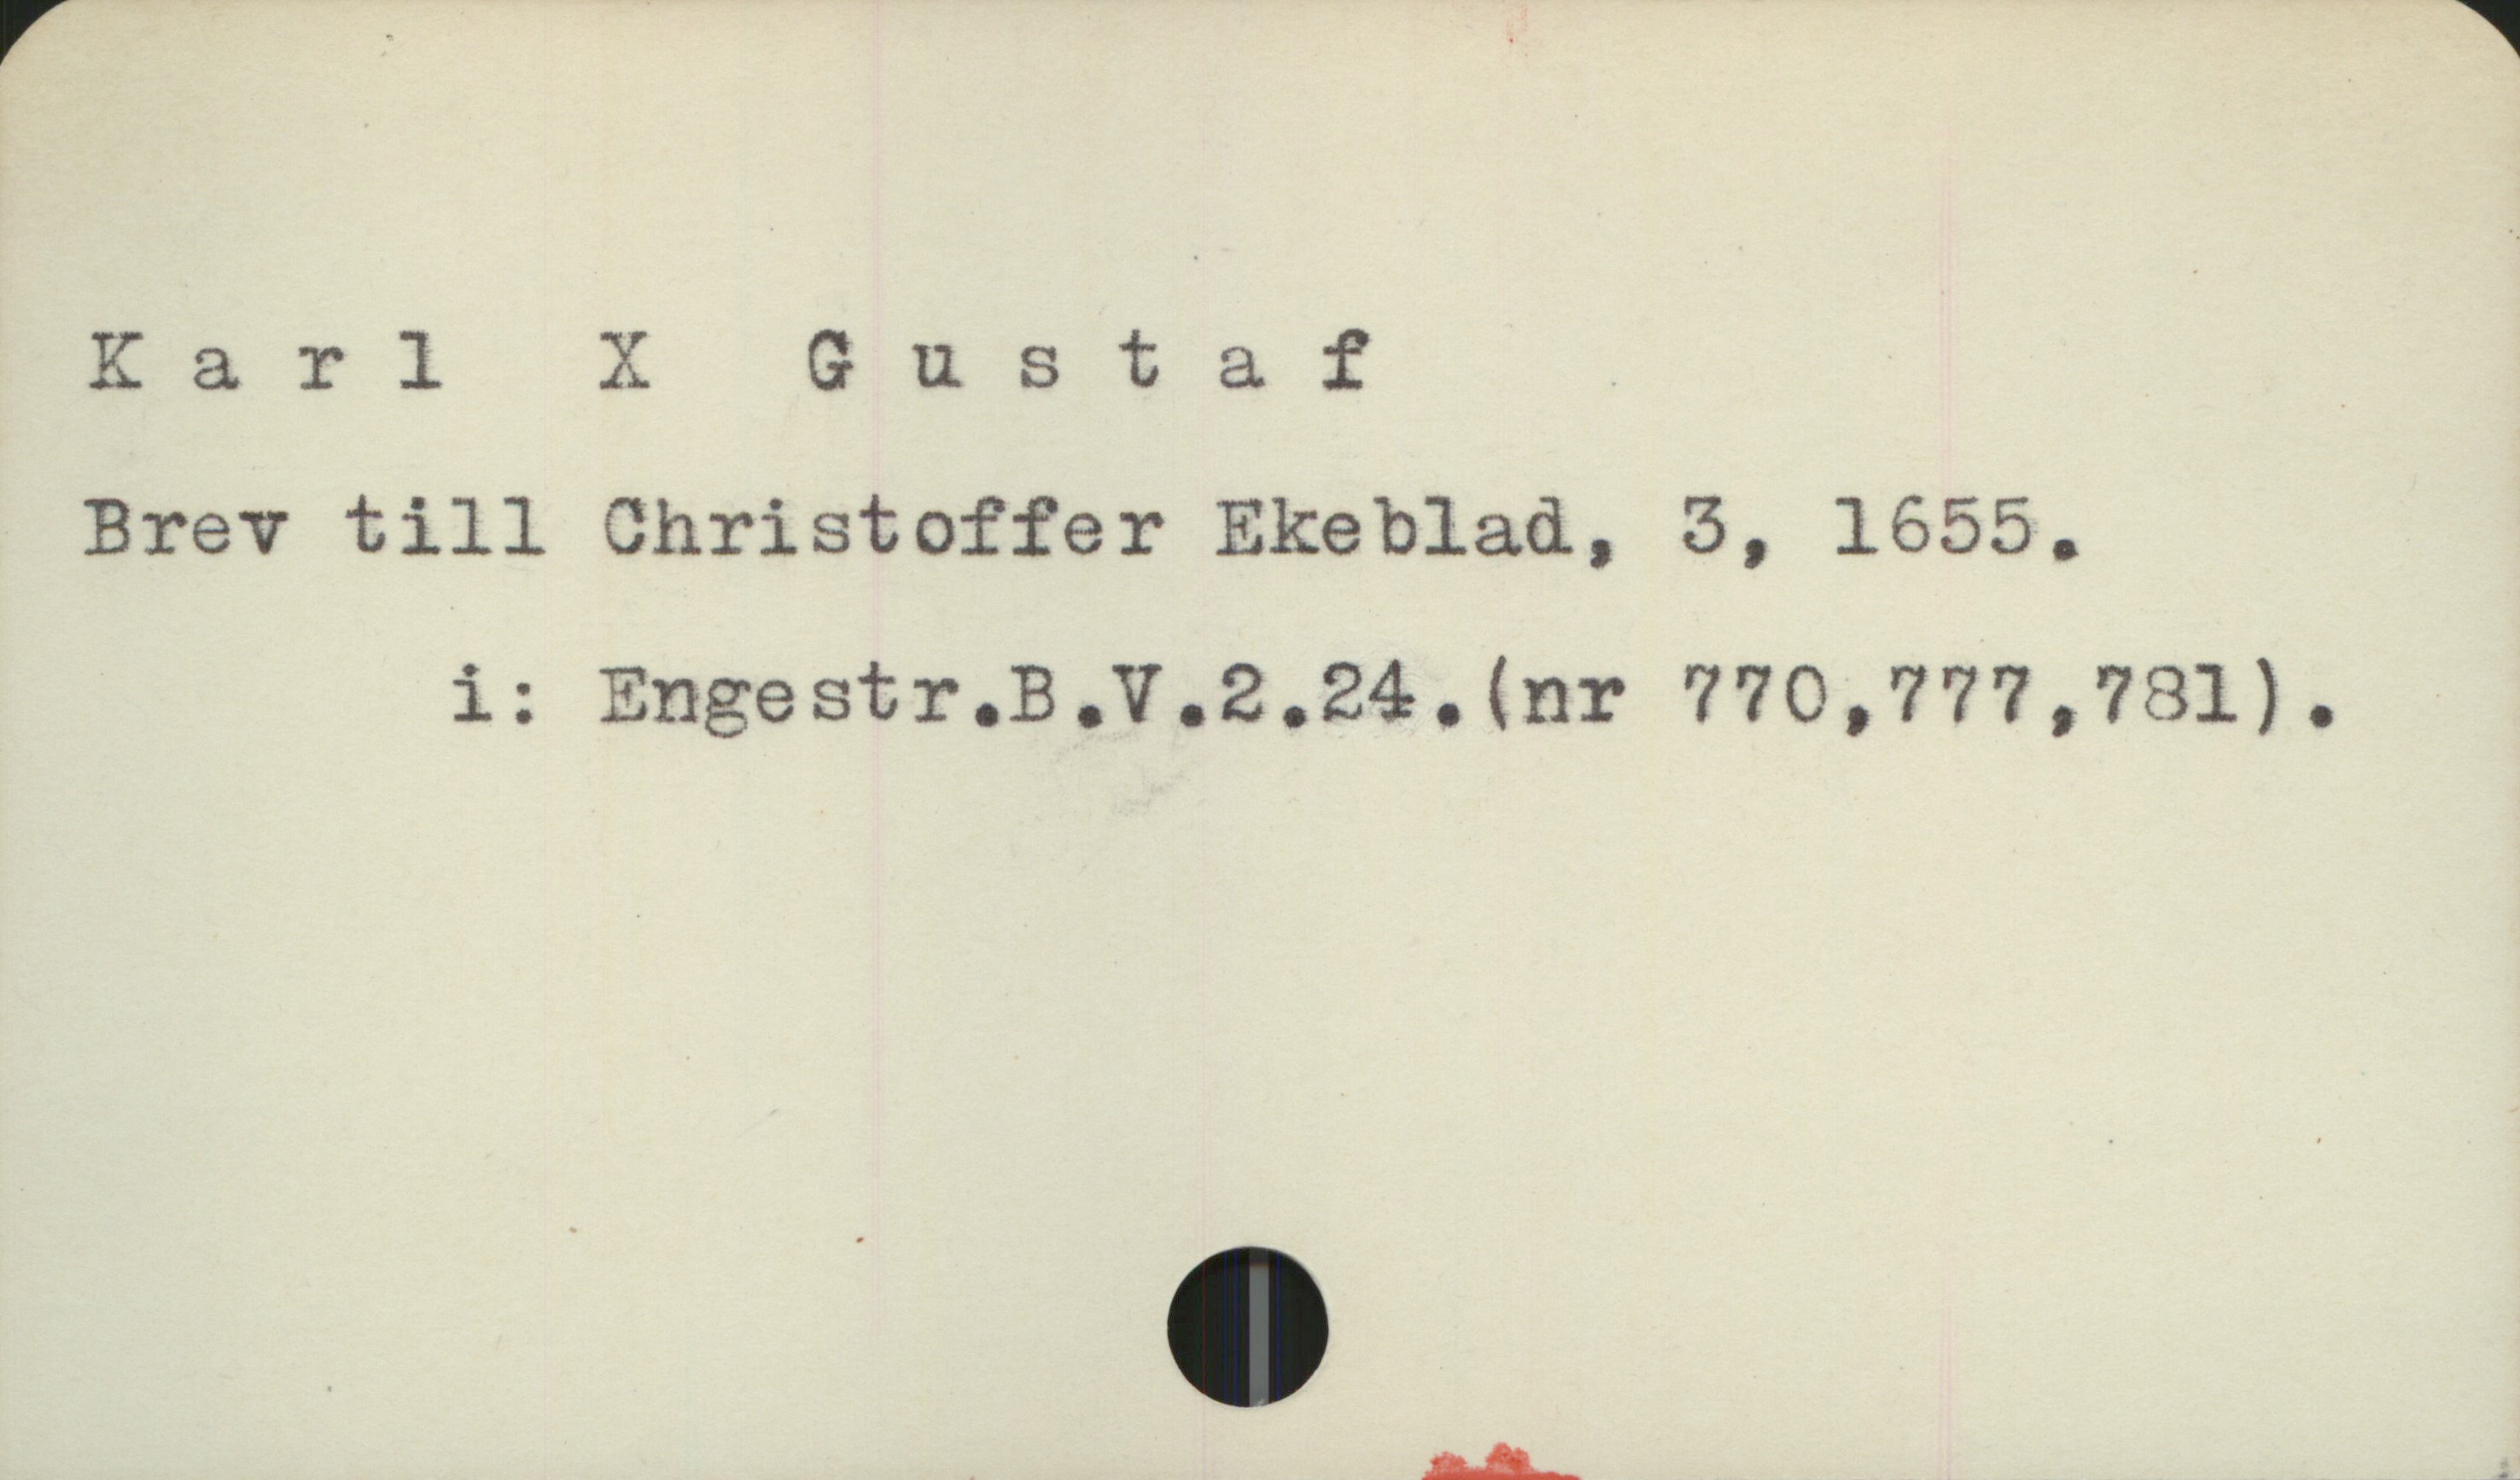  Karl X & ustaf .
Brev till Christoffer Ekeblad, 3, 1655.
i: Engestr.B.V.2.24. (nr 770,777,781).
vän ft

